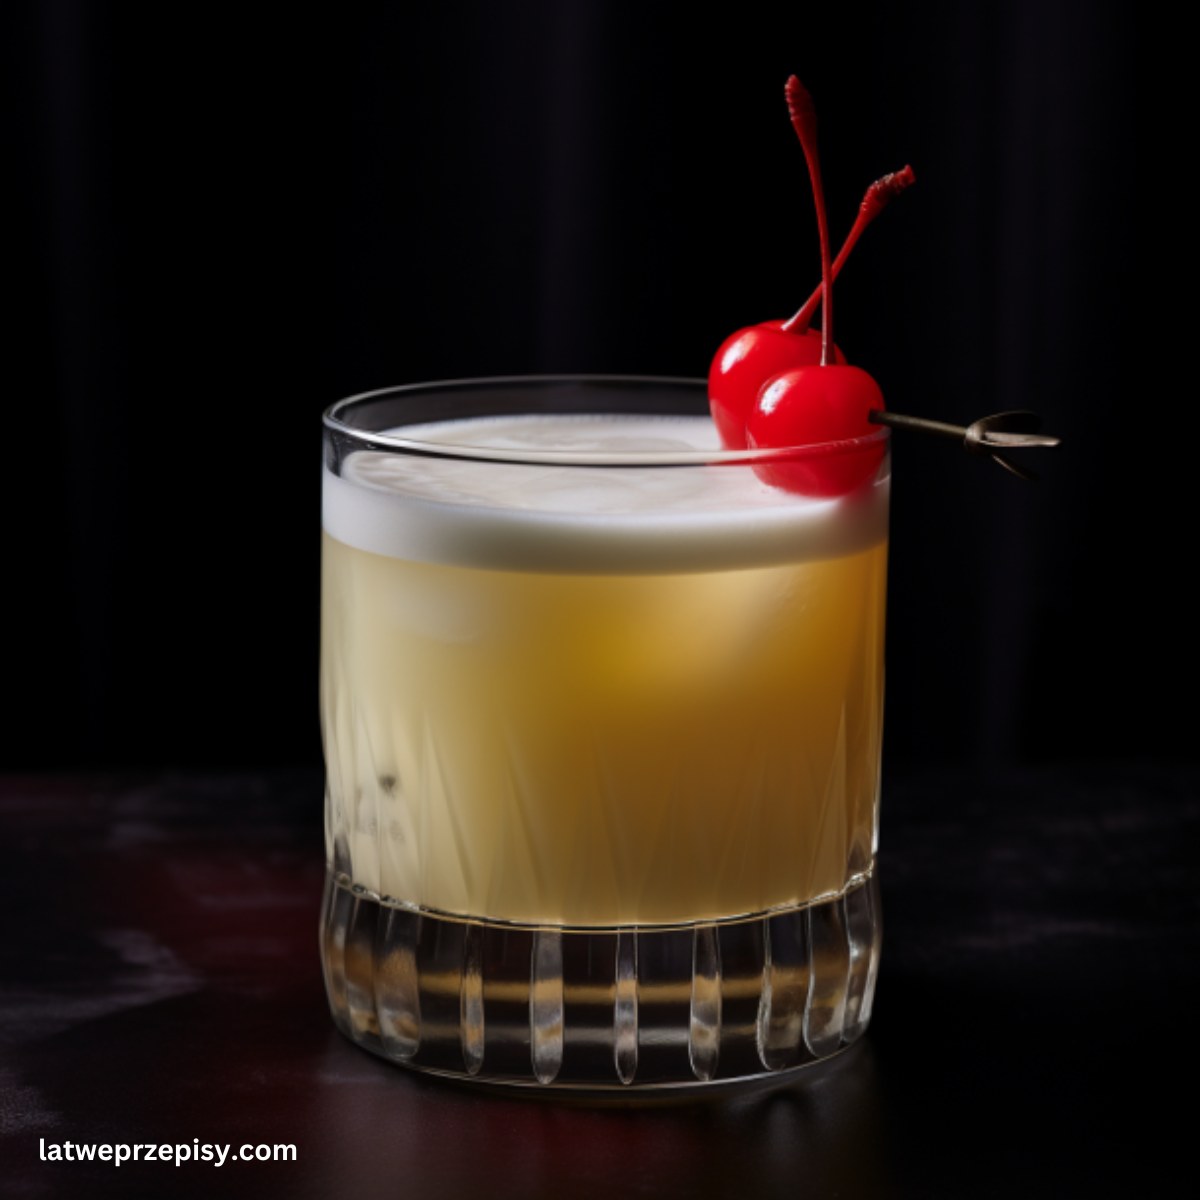 Wódka sour, podana w klasycznej szklance od whiskey z wisienką maraschino.